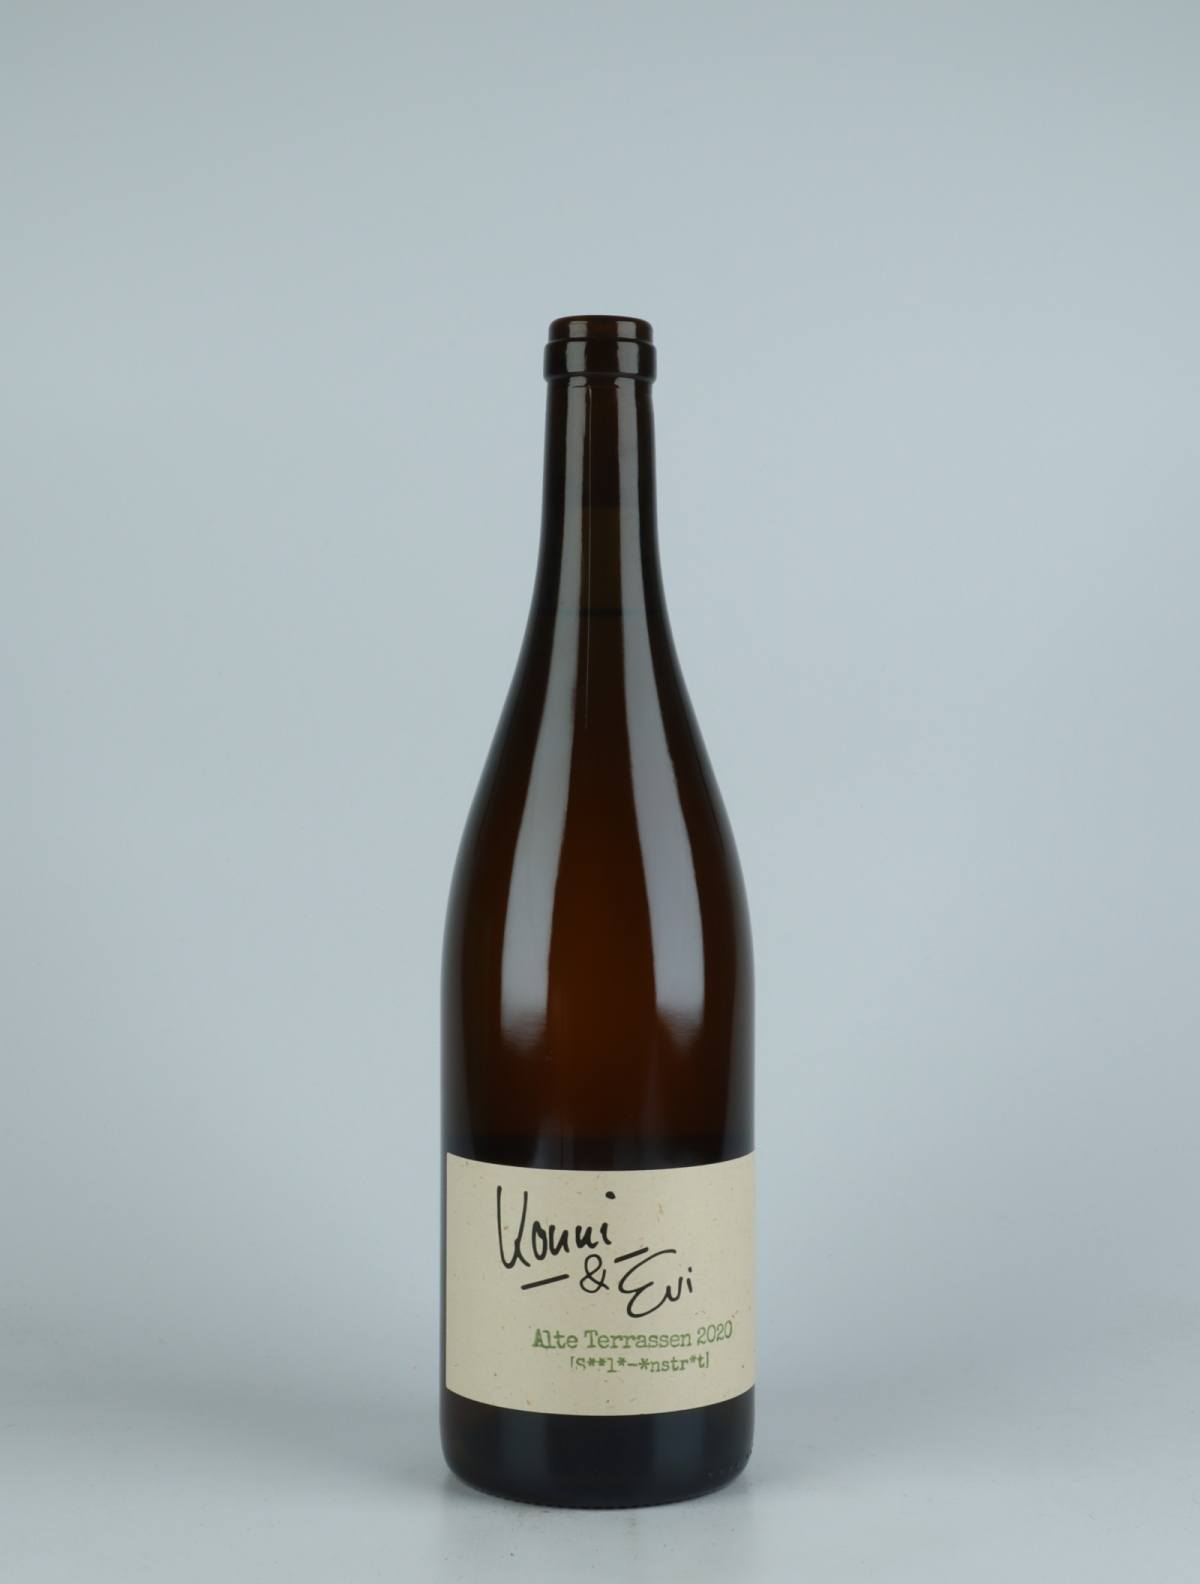 A bottle 2020 Alte Terrassen White wine from Konni & Evi, Saale-Unstrut in Germany